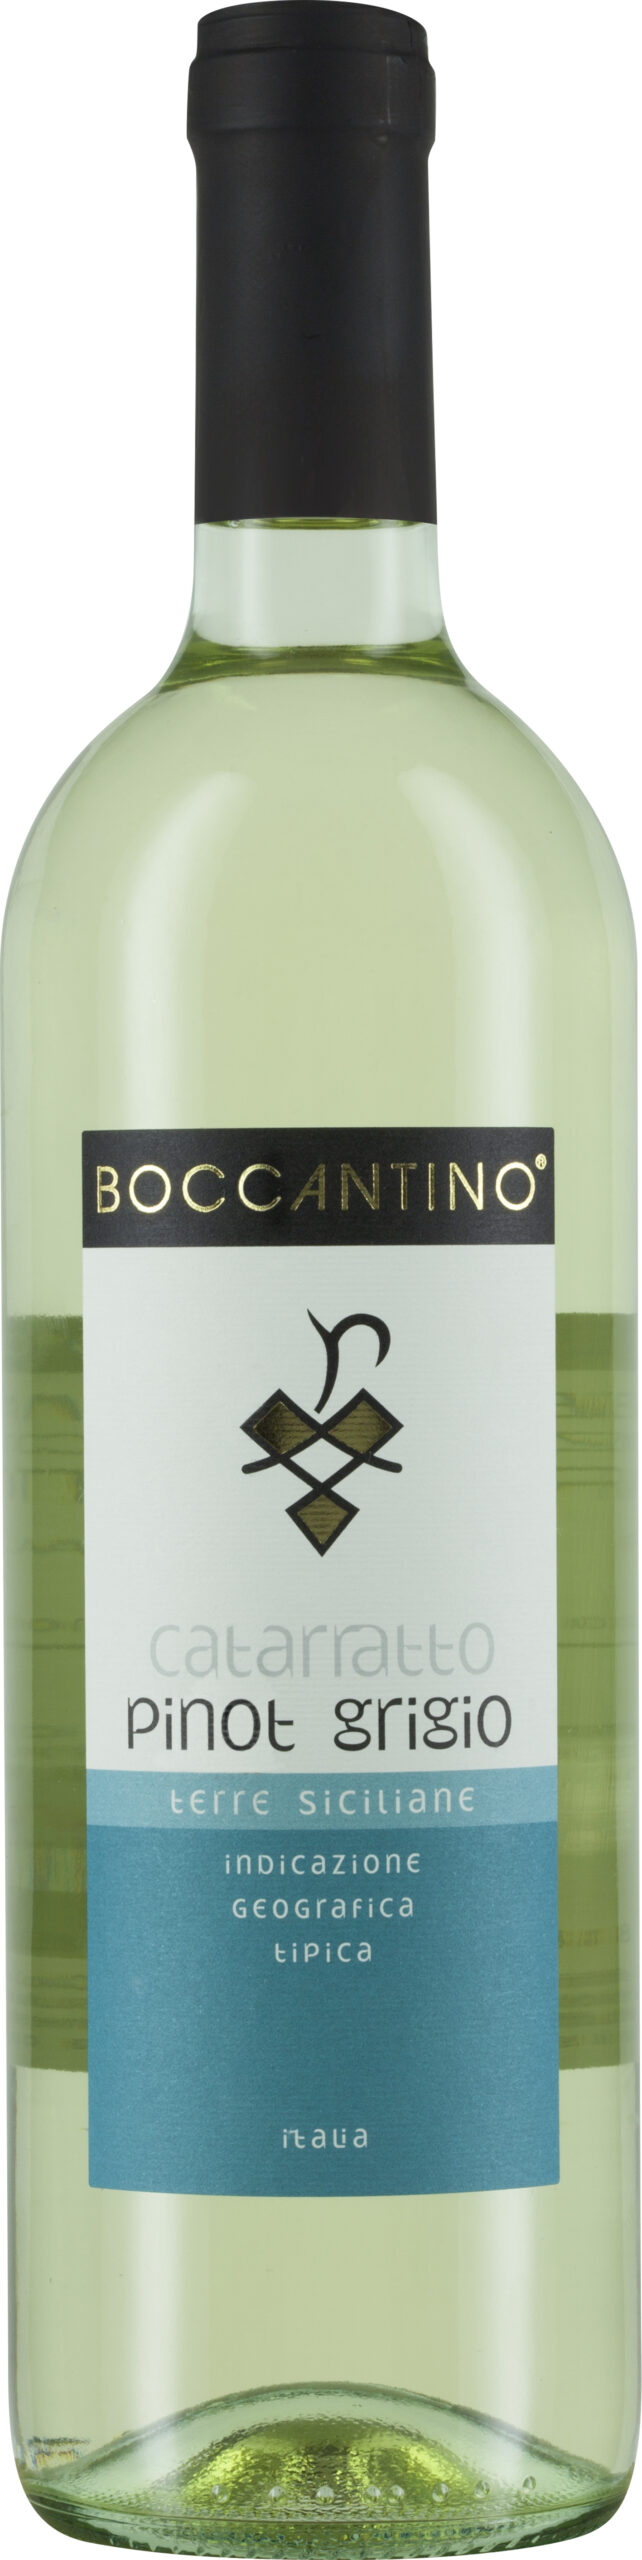 Pinot Schenk Boccantino, Catarratto Weine Grigio, Terre IGT - Siciliane